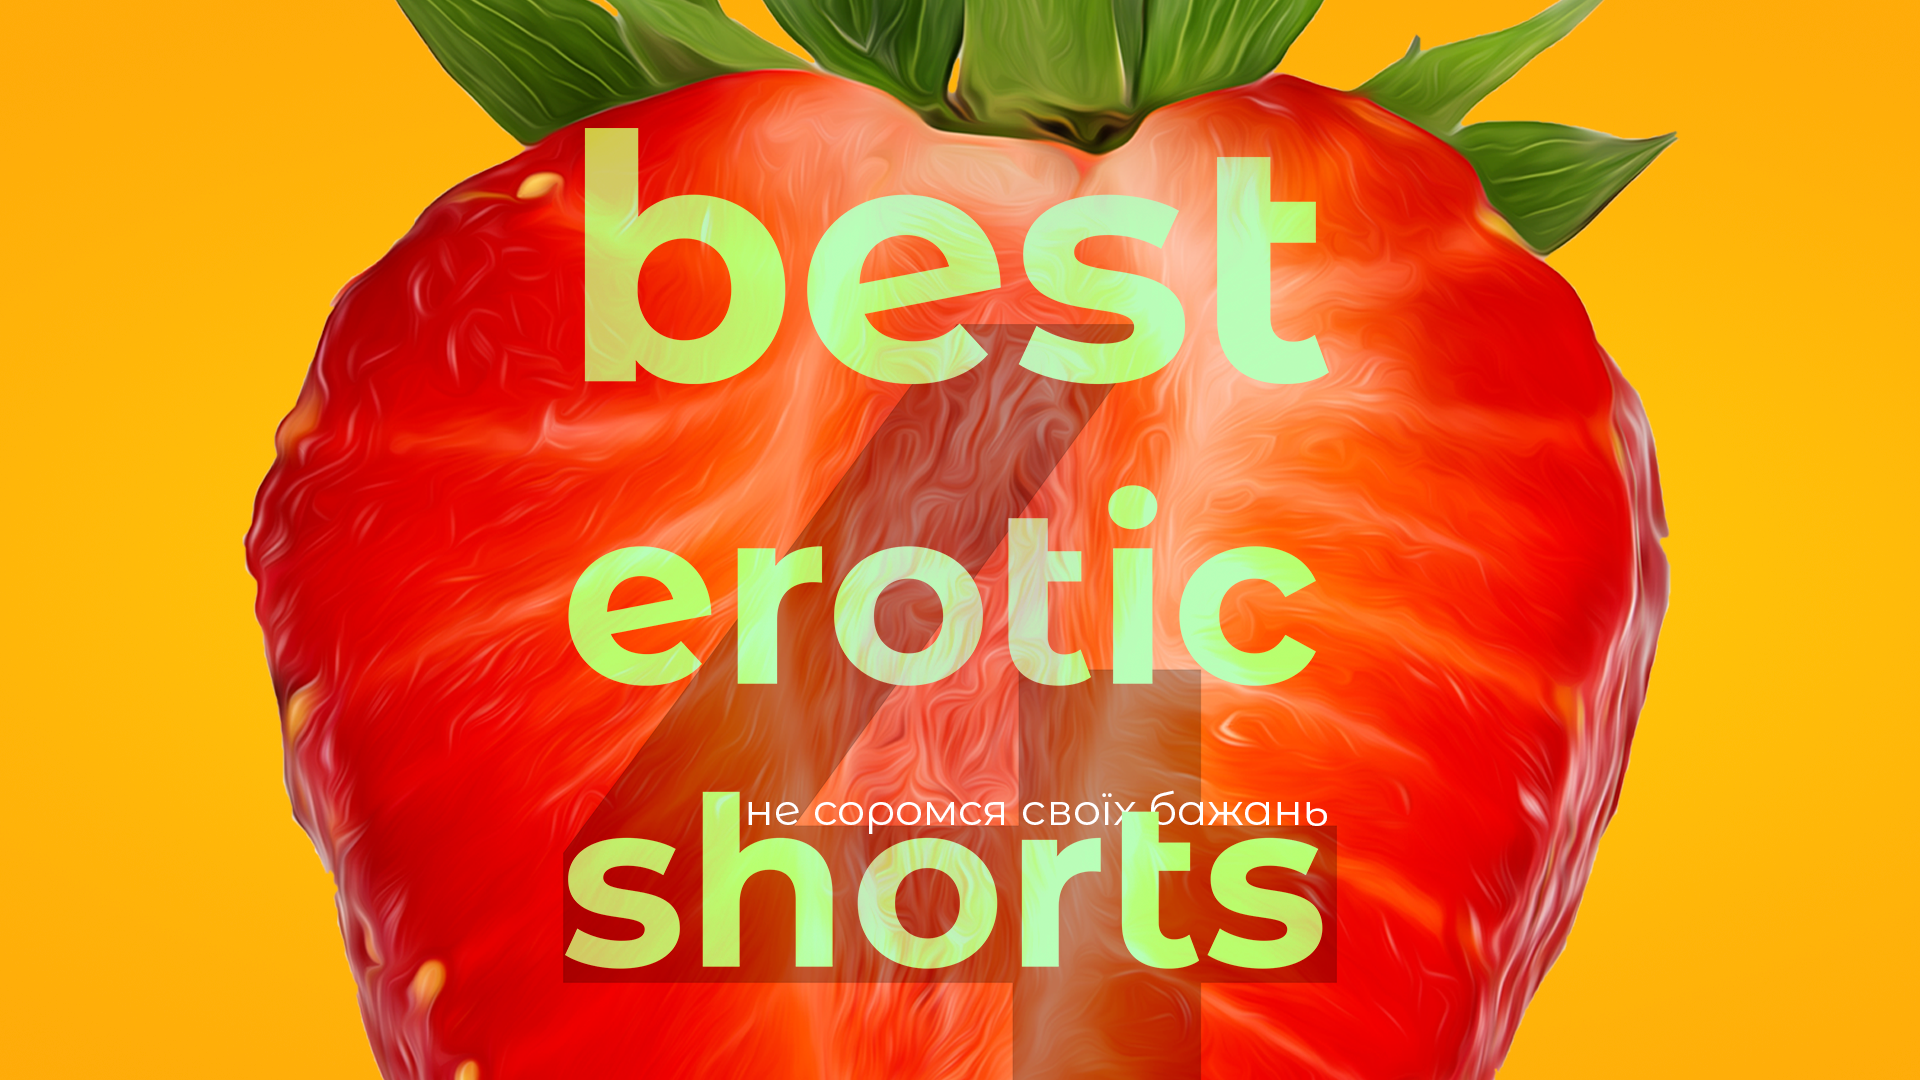 фестиваль Best Erotic Shorts